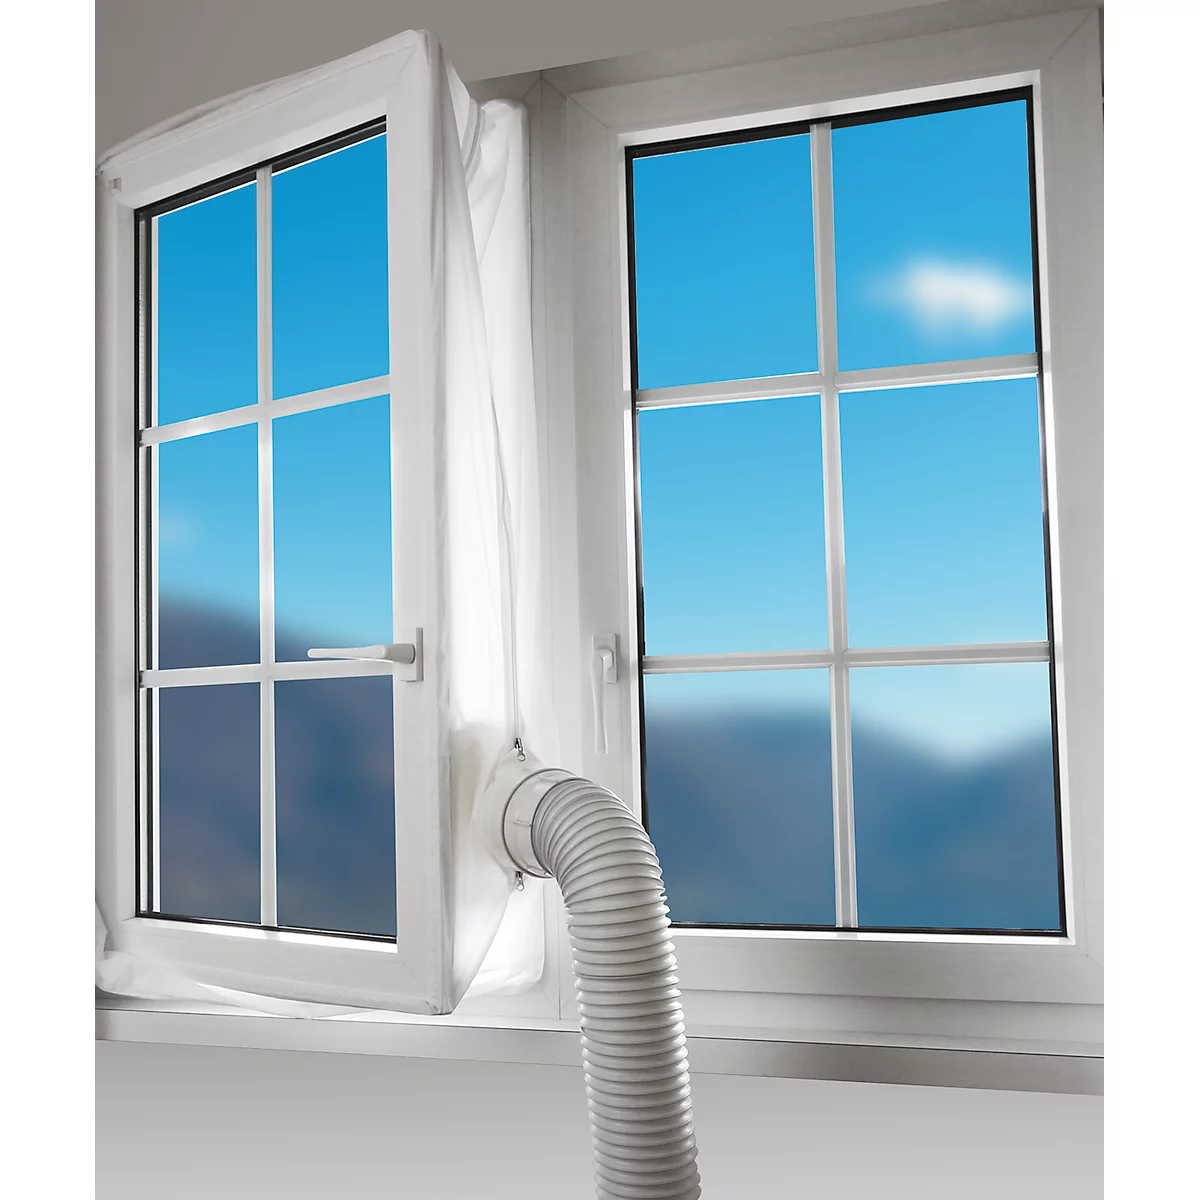 Kit de plaques d'étanchéité de fenêtre pour climatiseurs, Kit pour fenêtres  coulissantes